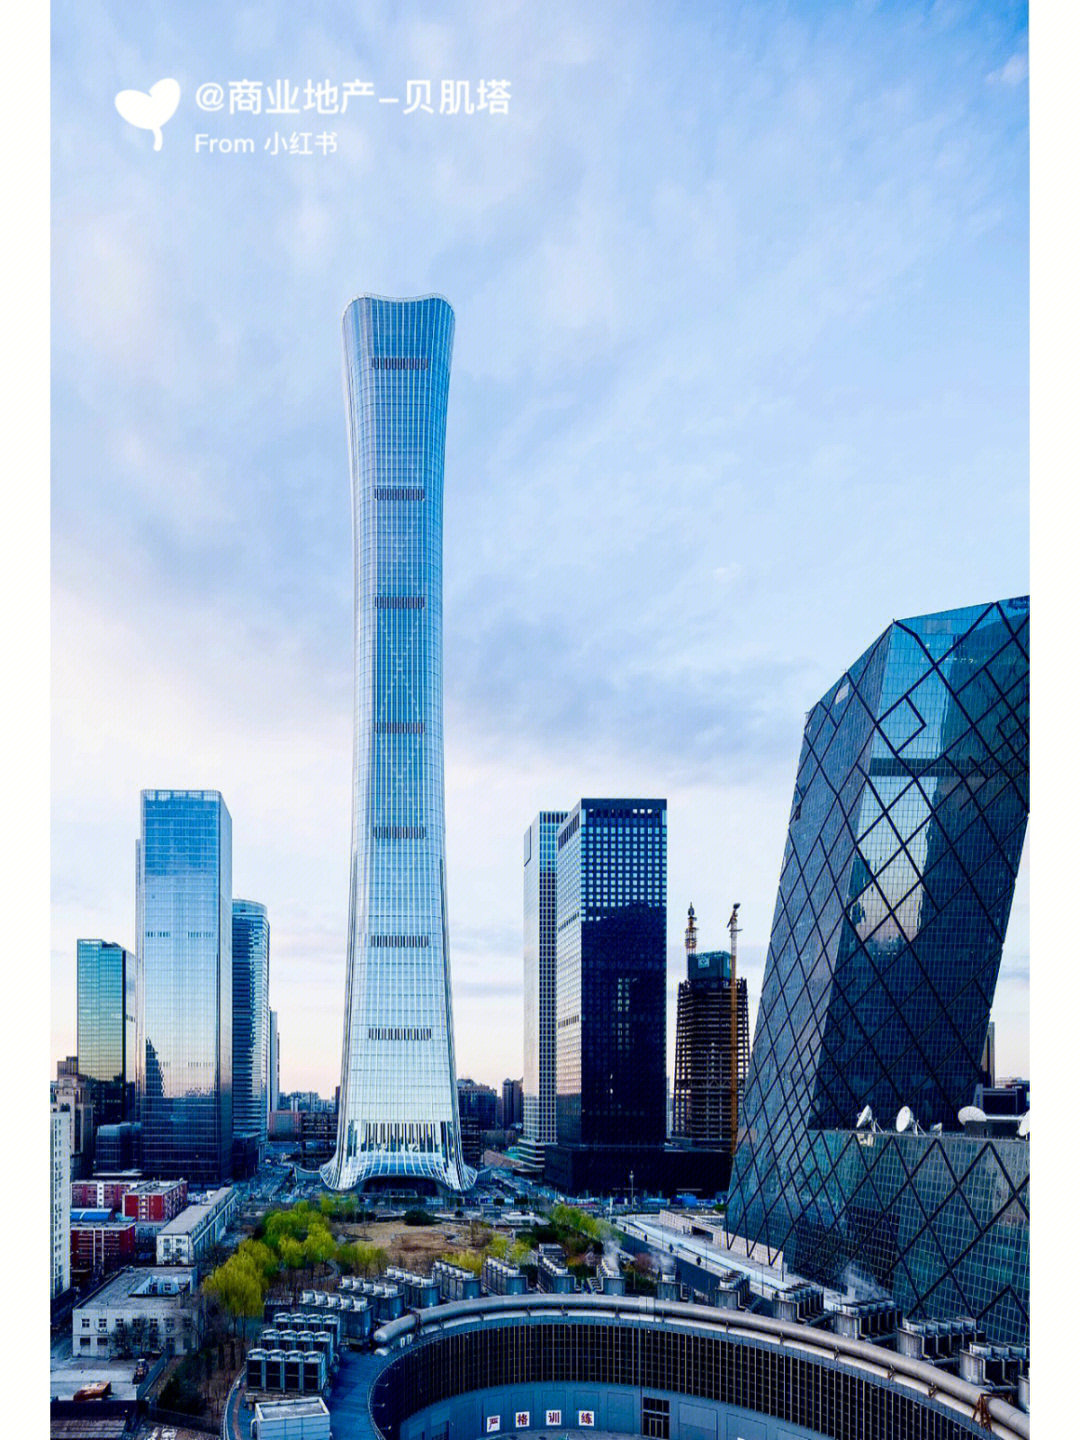 中国尊528米北京第一高楼丨中信大厦